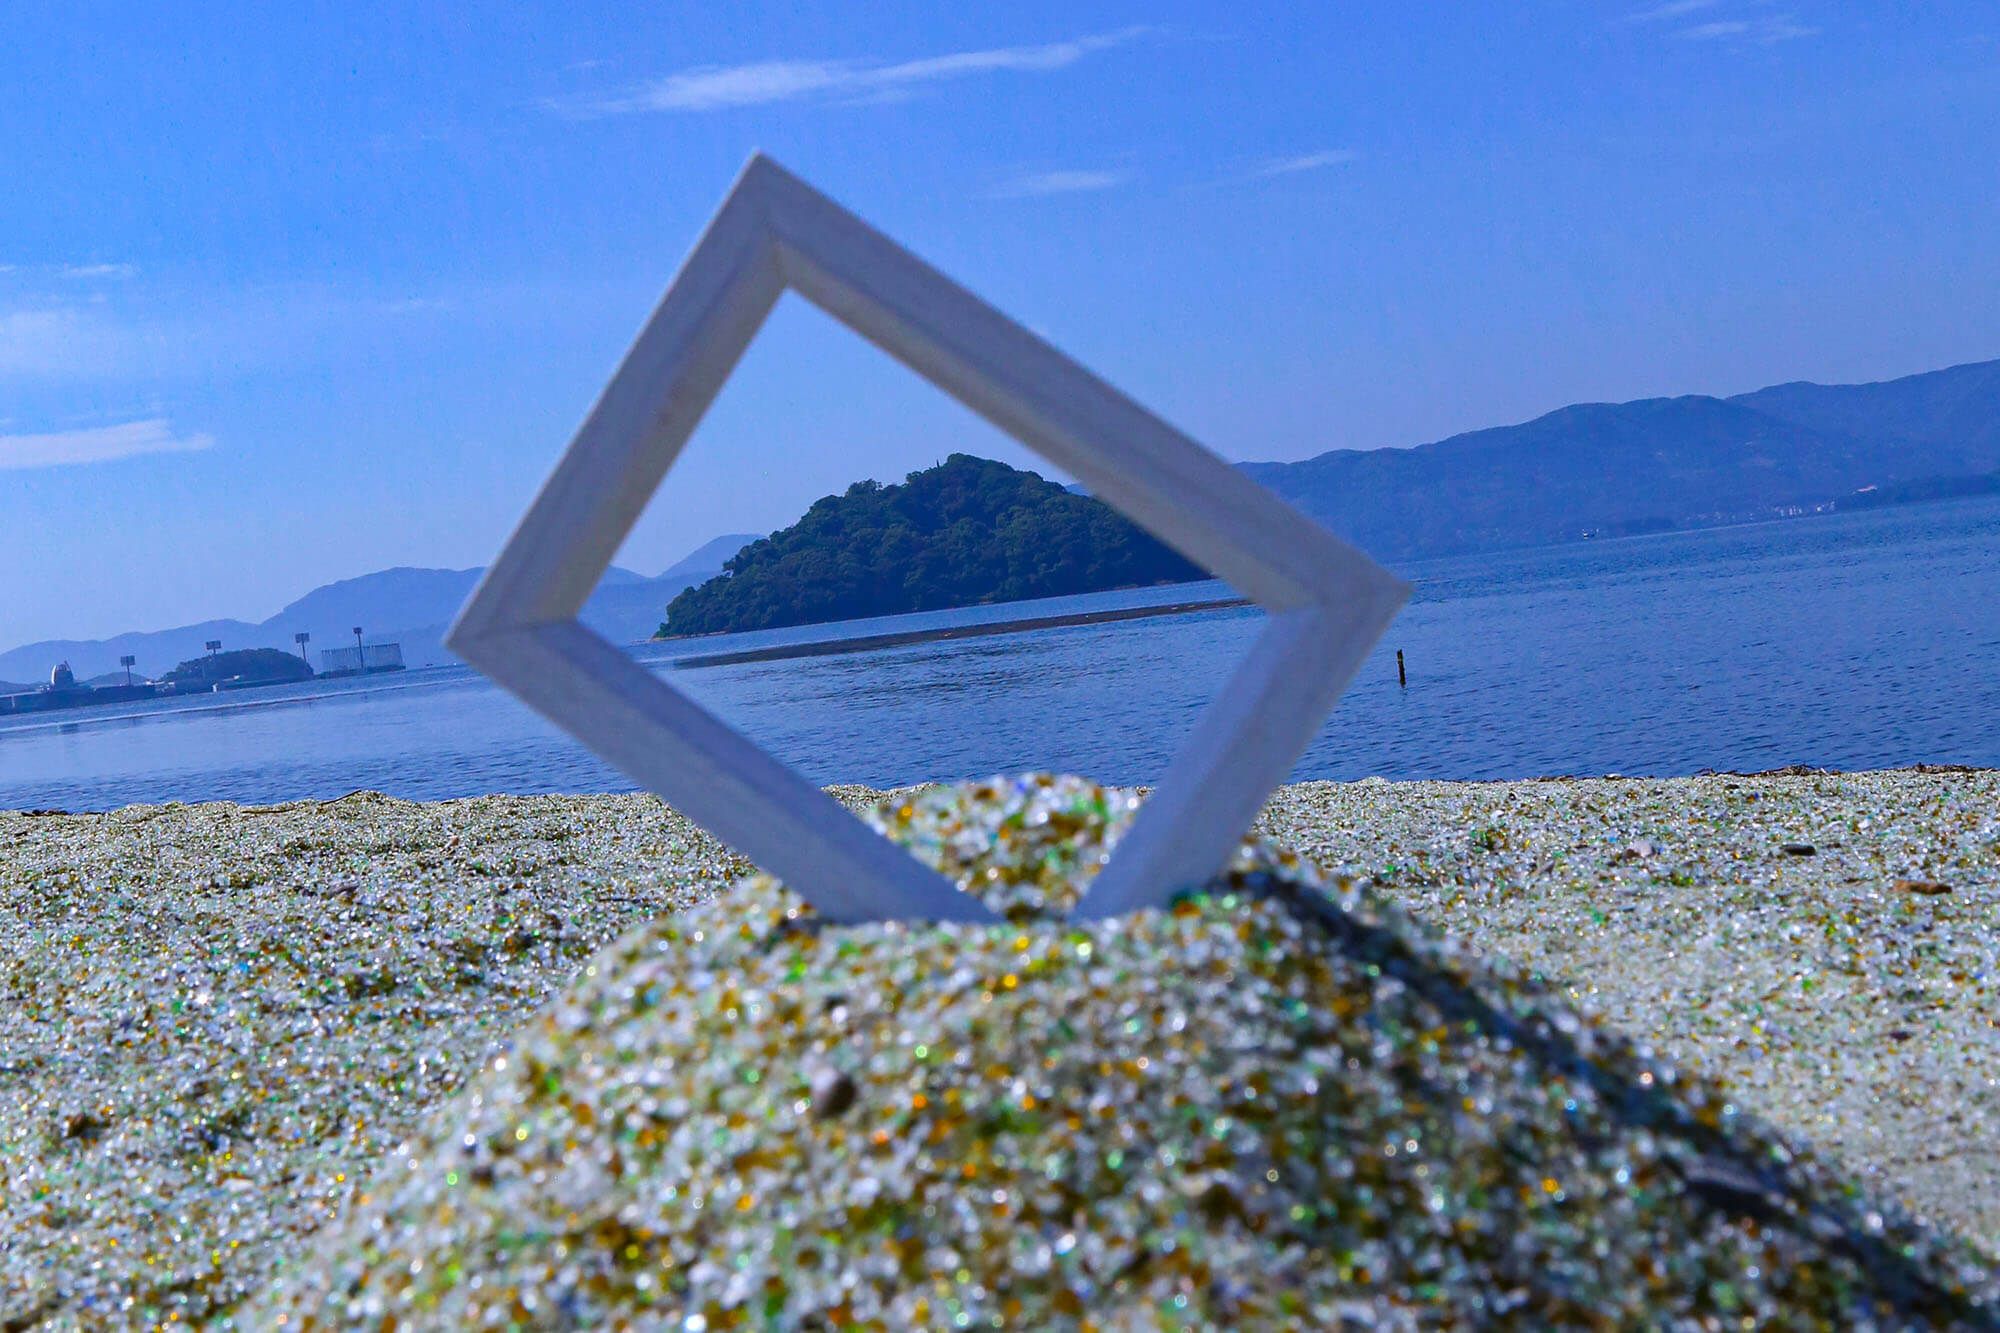 廃ガラス再生砂を用いて造成した「ガラスの砂浜」。インスタ映えスポットとして人気